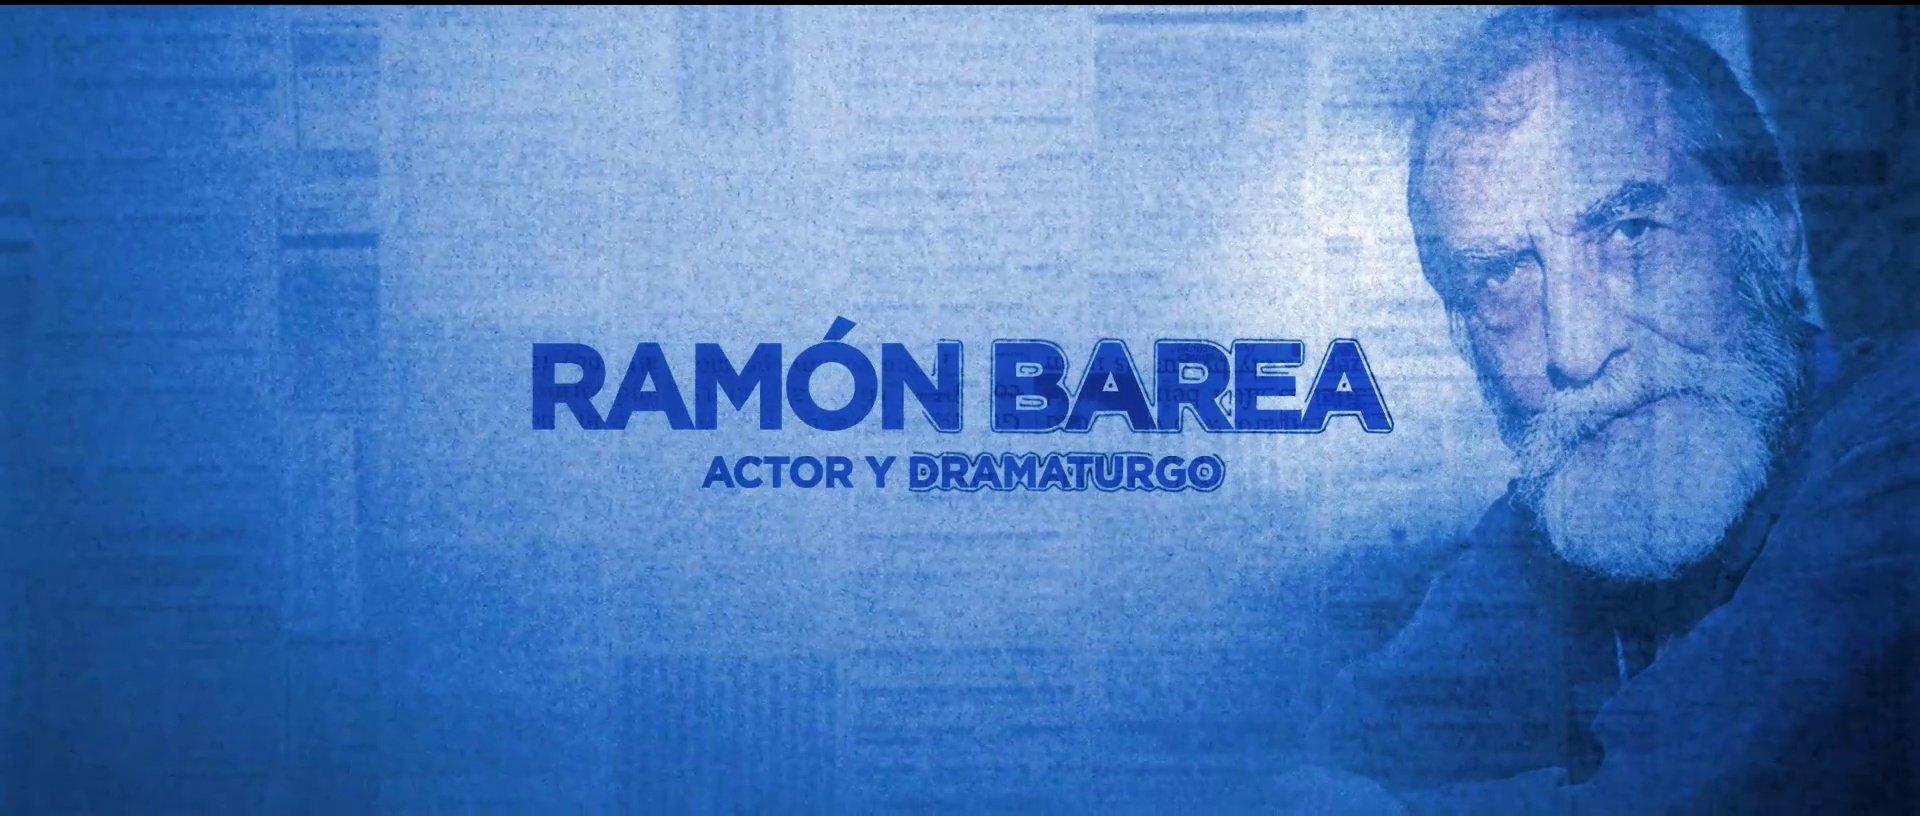 Este martes a partir de las 21:40h, 'Cara a Cara' con el actor Ramón Barea